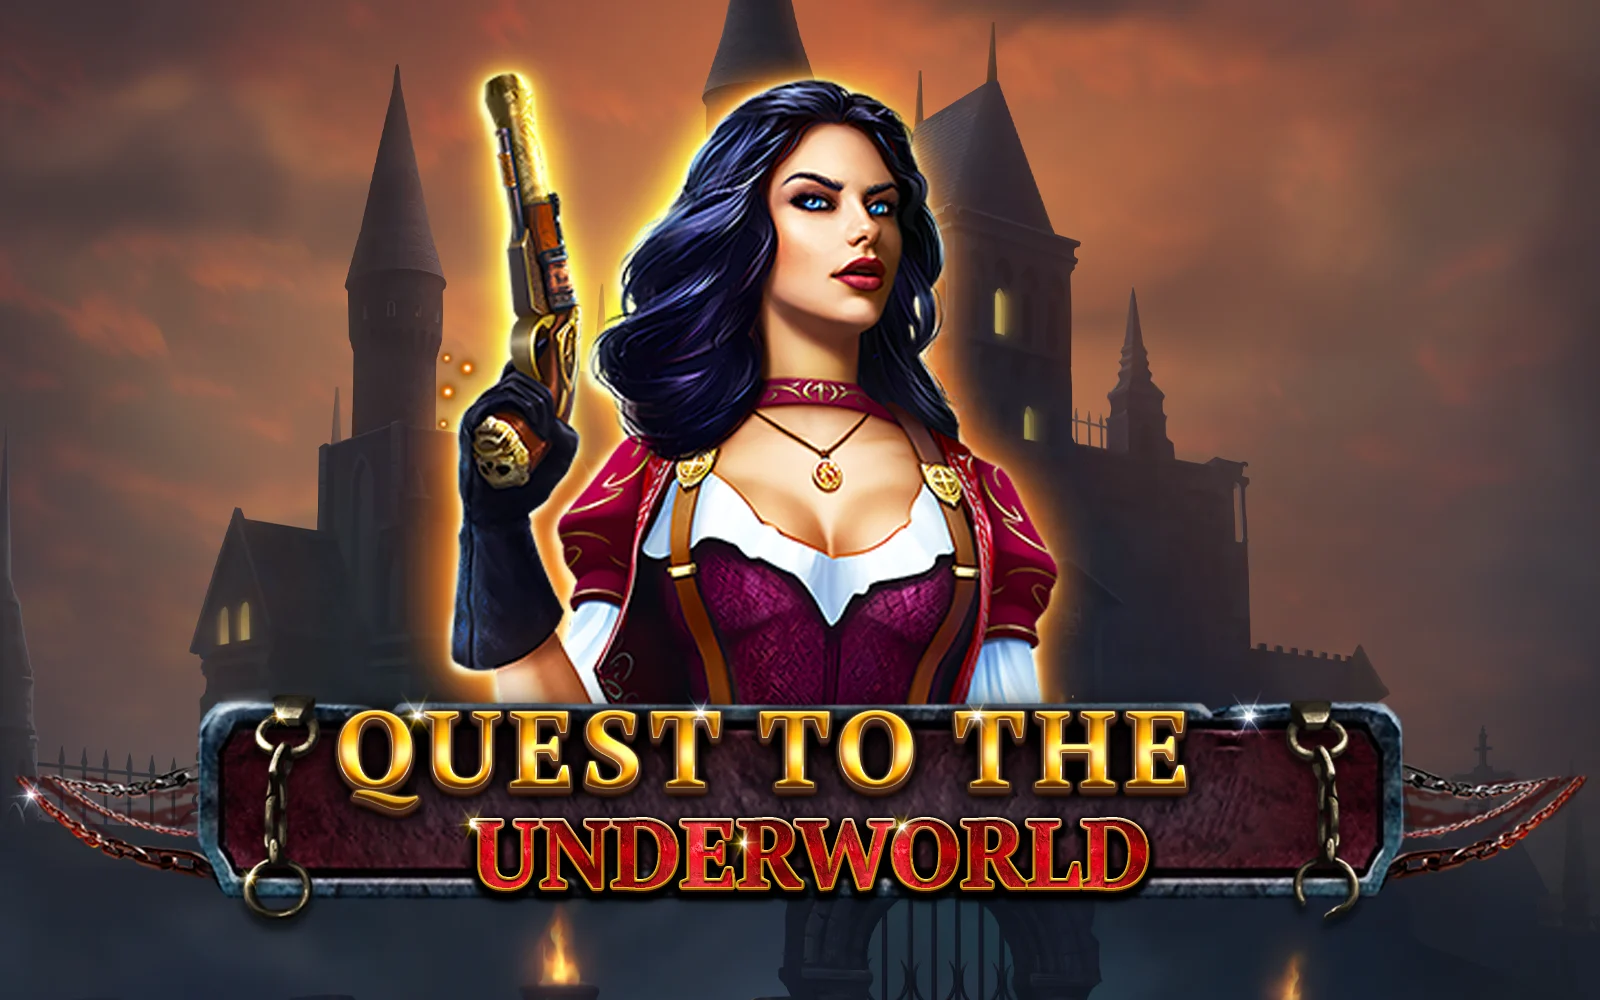 Starcasino.be online casino üzerinden Quest to the Underworld oynayın